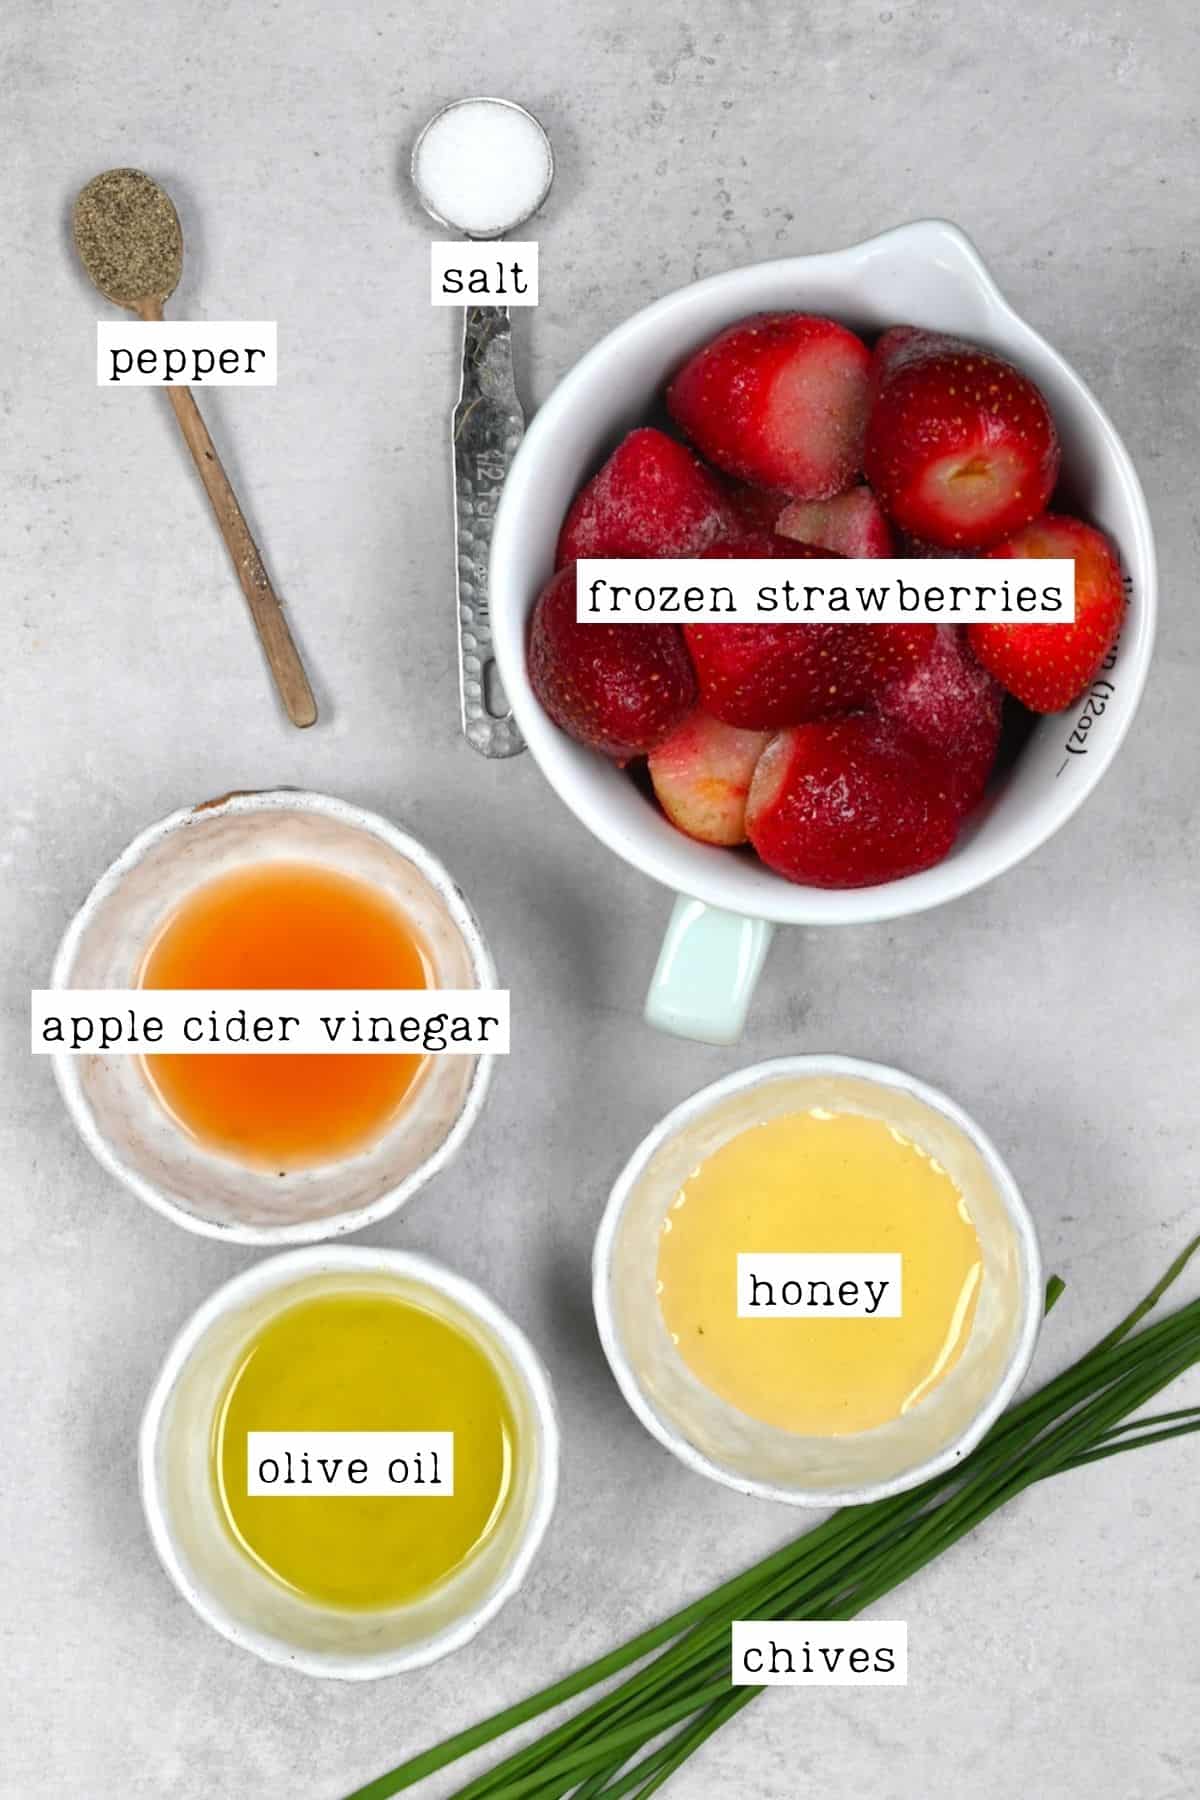 Ingredients for strawberry vinaigrette